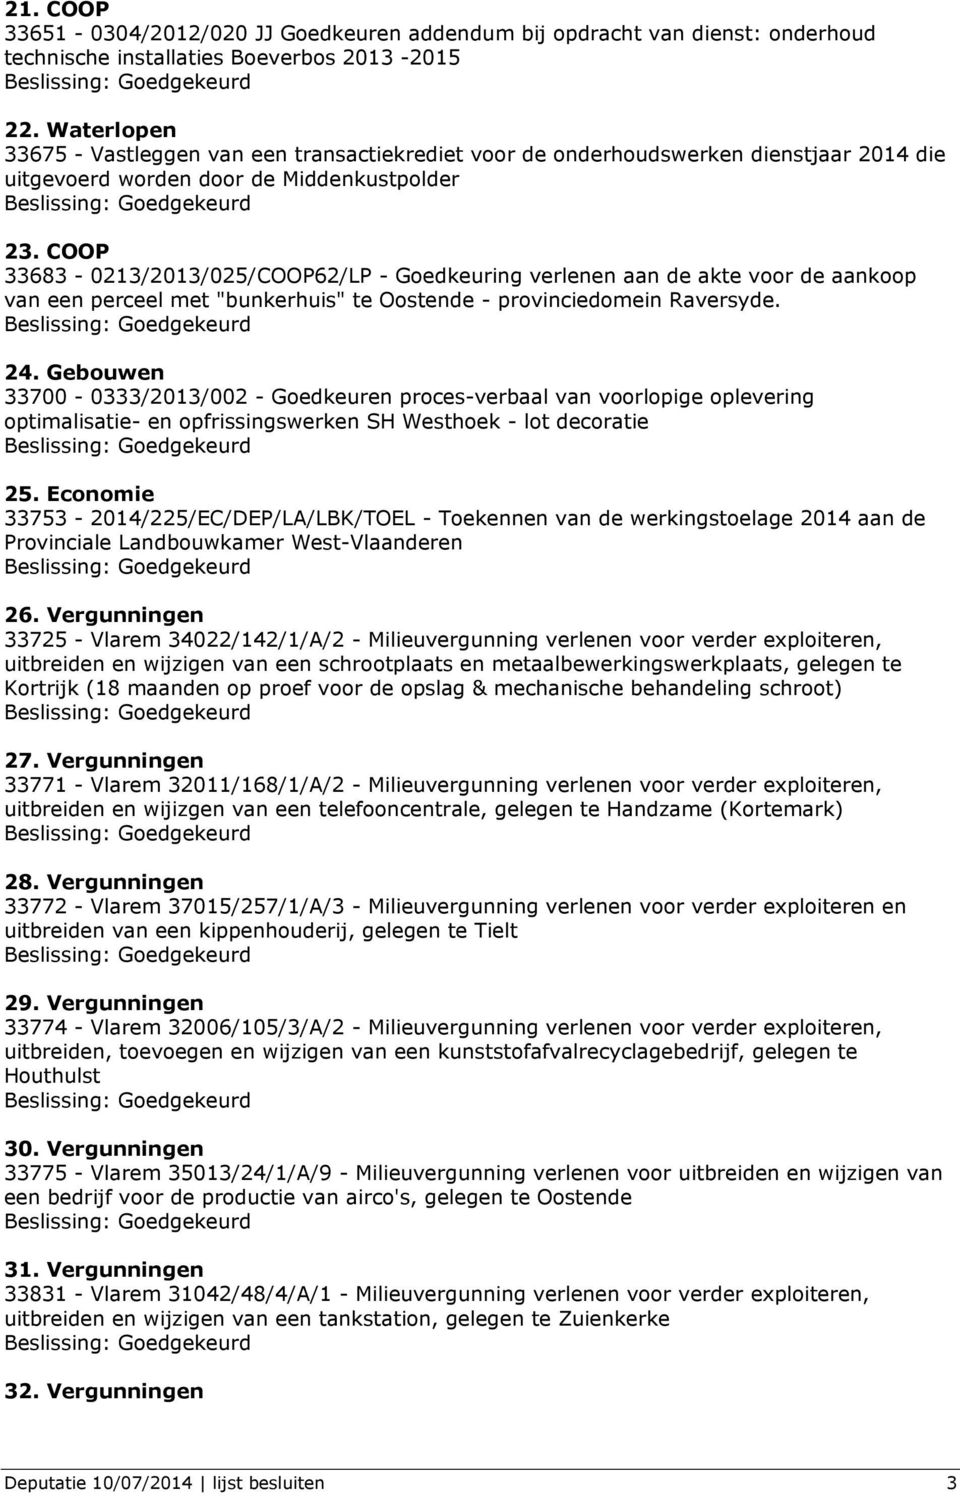 COOP 33683-0213/2013/025/COOP62/LP - Goedkeuring verlenen aan de akte voor de aankoop van een perceel met "bunkerhuis" te Oostende - provinciedomein Raversyde. 24.